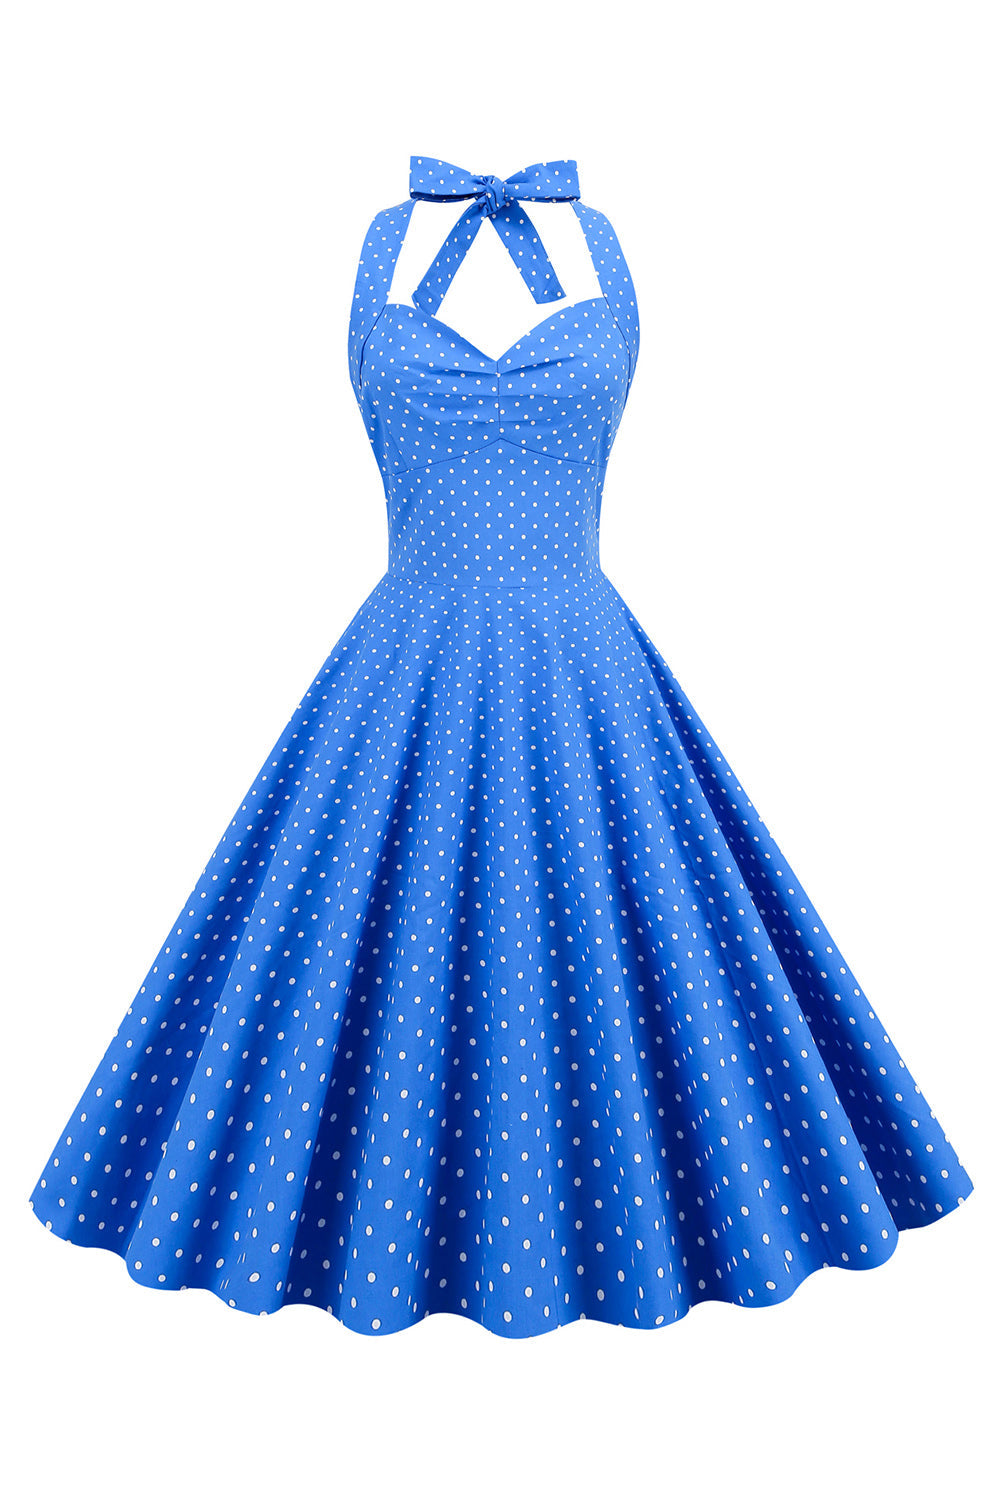 Neckholder Blau Polka Dots Vintage Kleid mit Rückenlehne